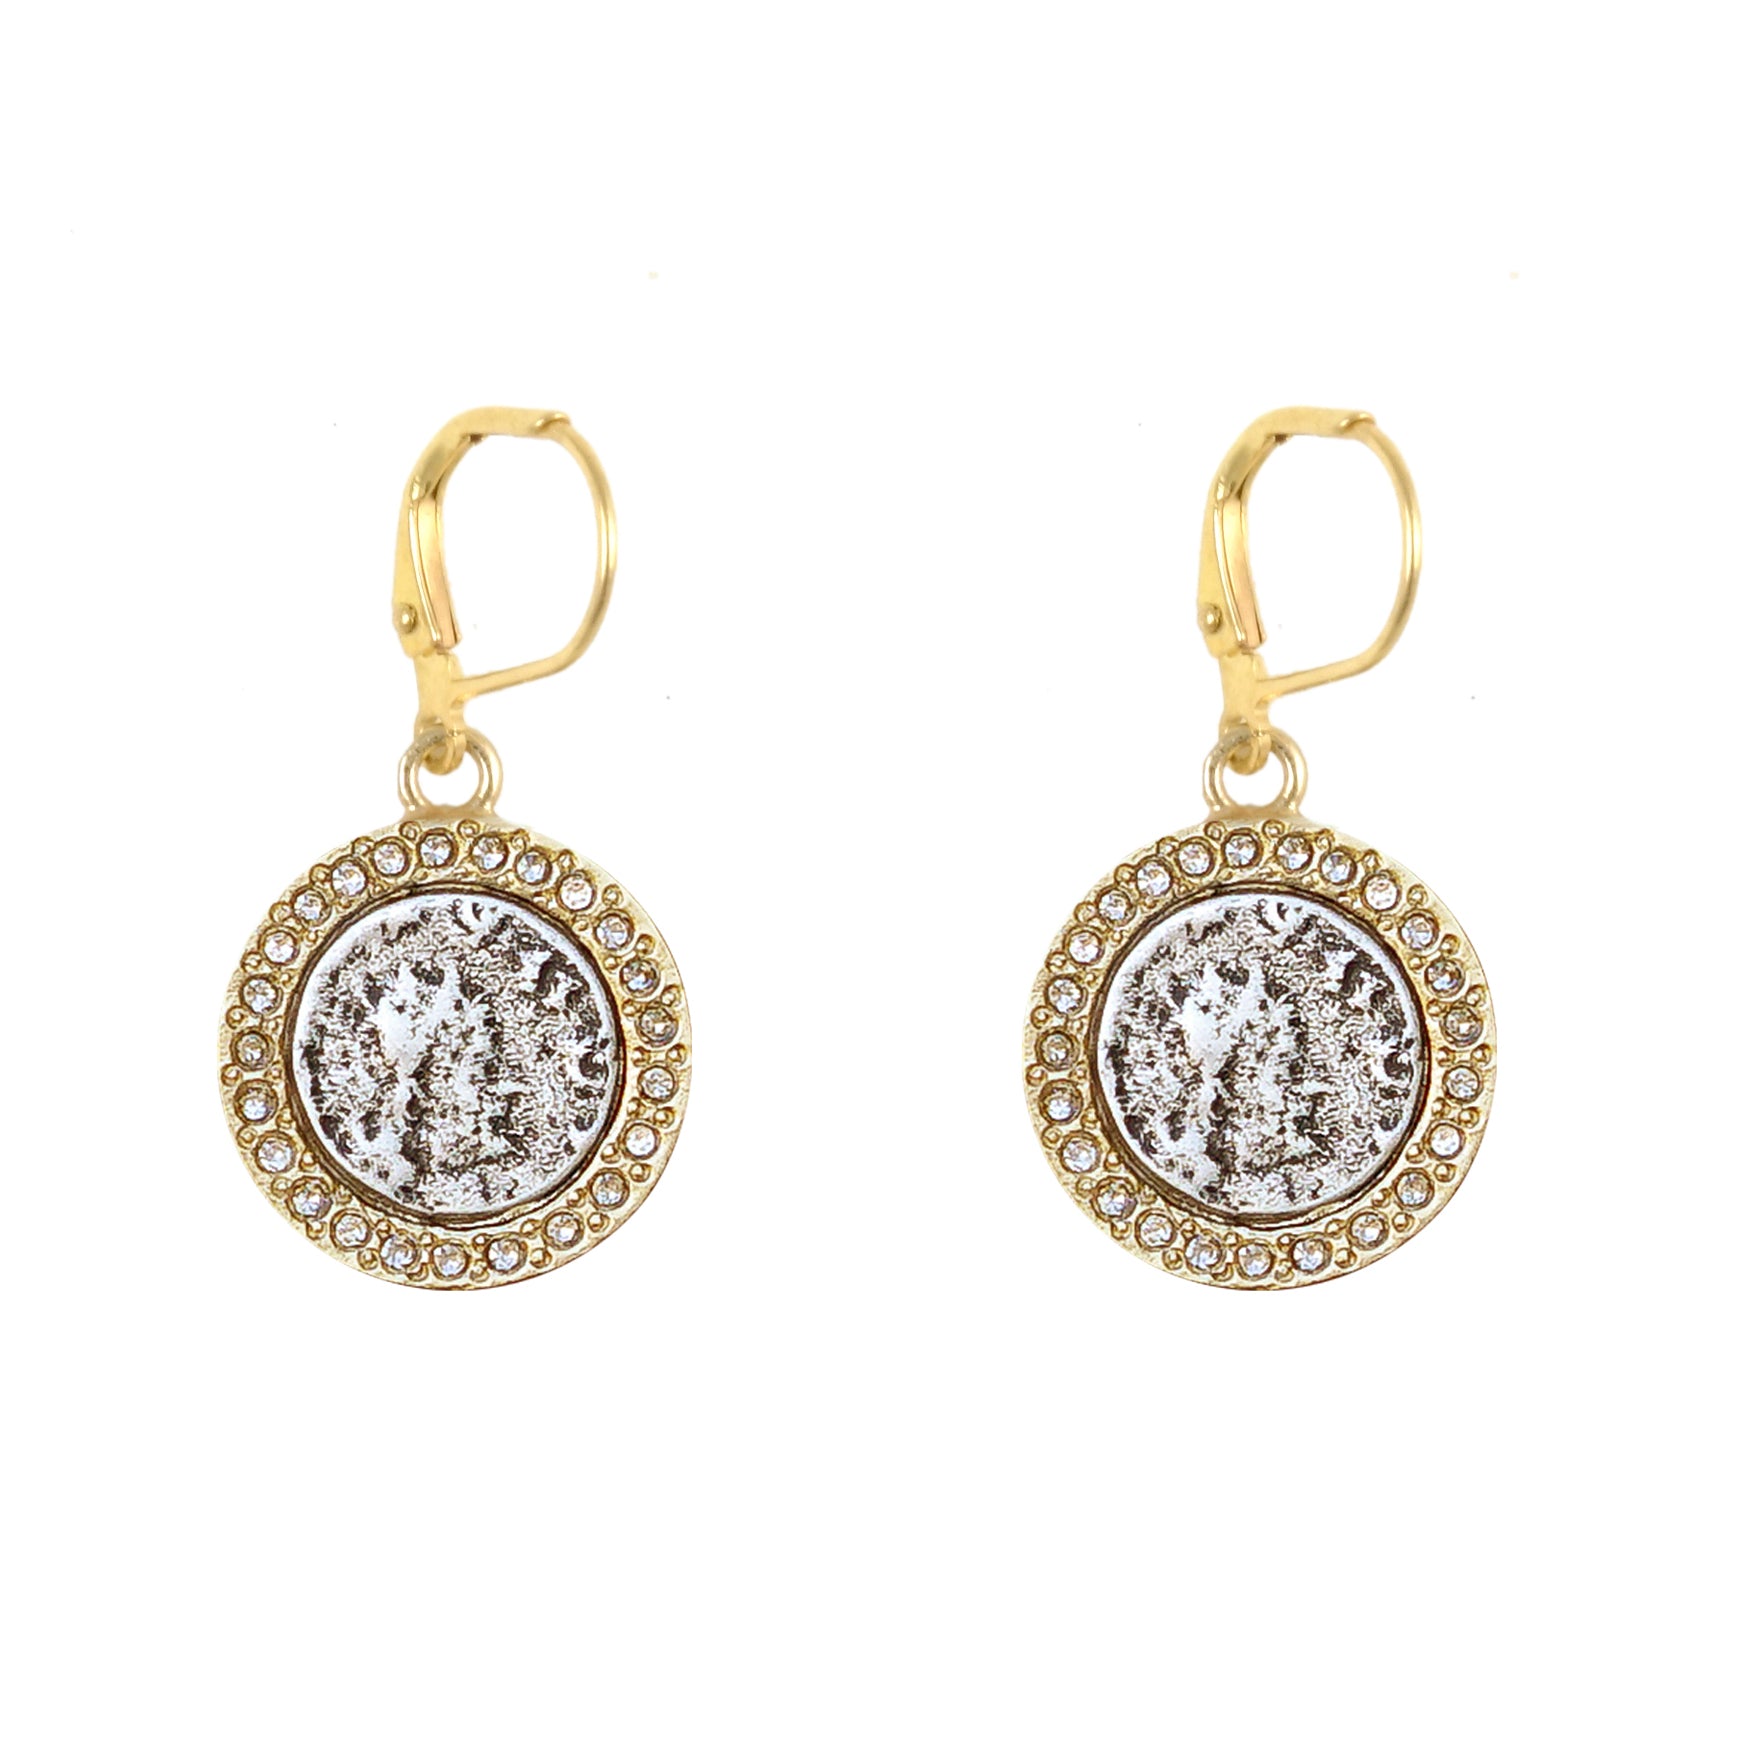 laxmi earrings | Gold earrings designs, Temple jewellery earrings, Gold  jewelry earrings